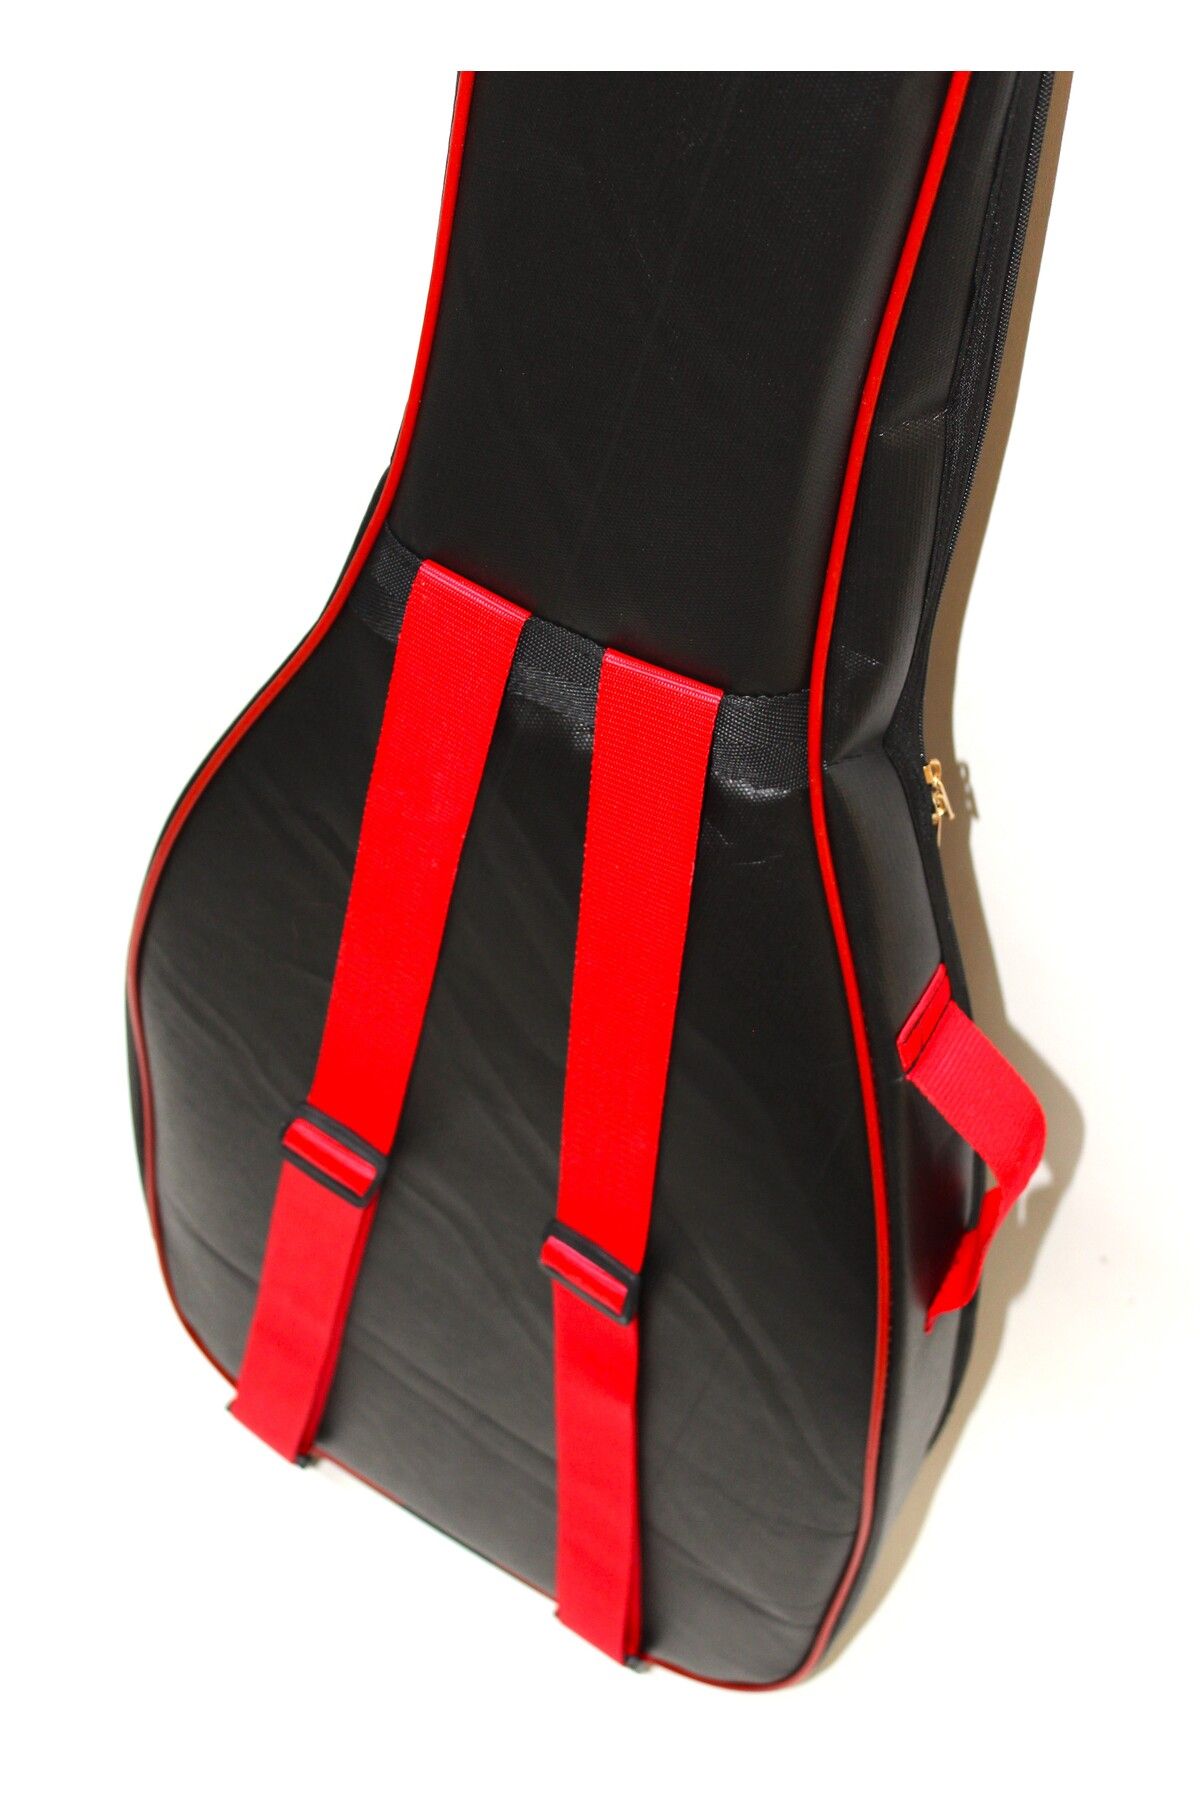 PANDURA MÜZİK KLASİK gitar taşıma kılıfı softcase özel tasarım FP ürün